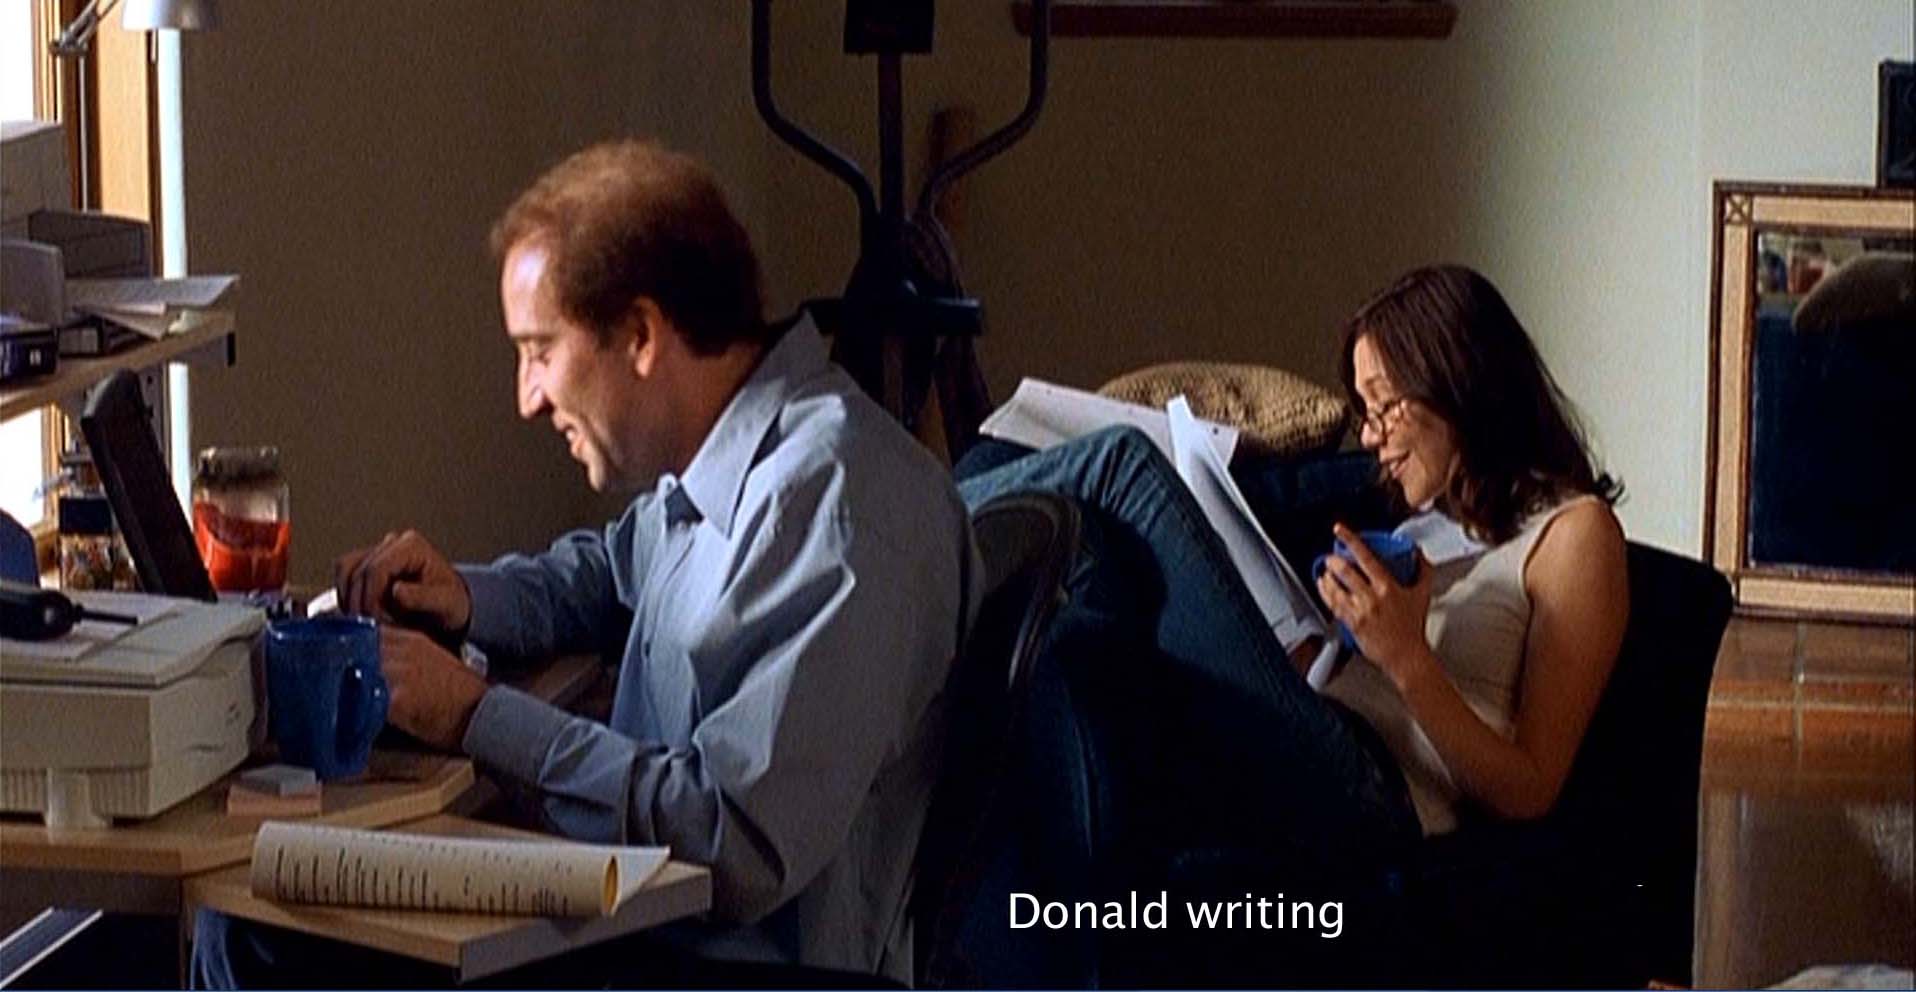 Donald writing